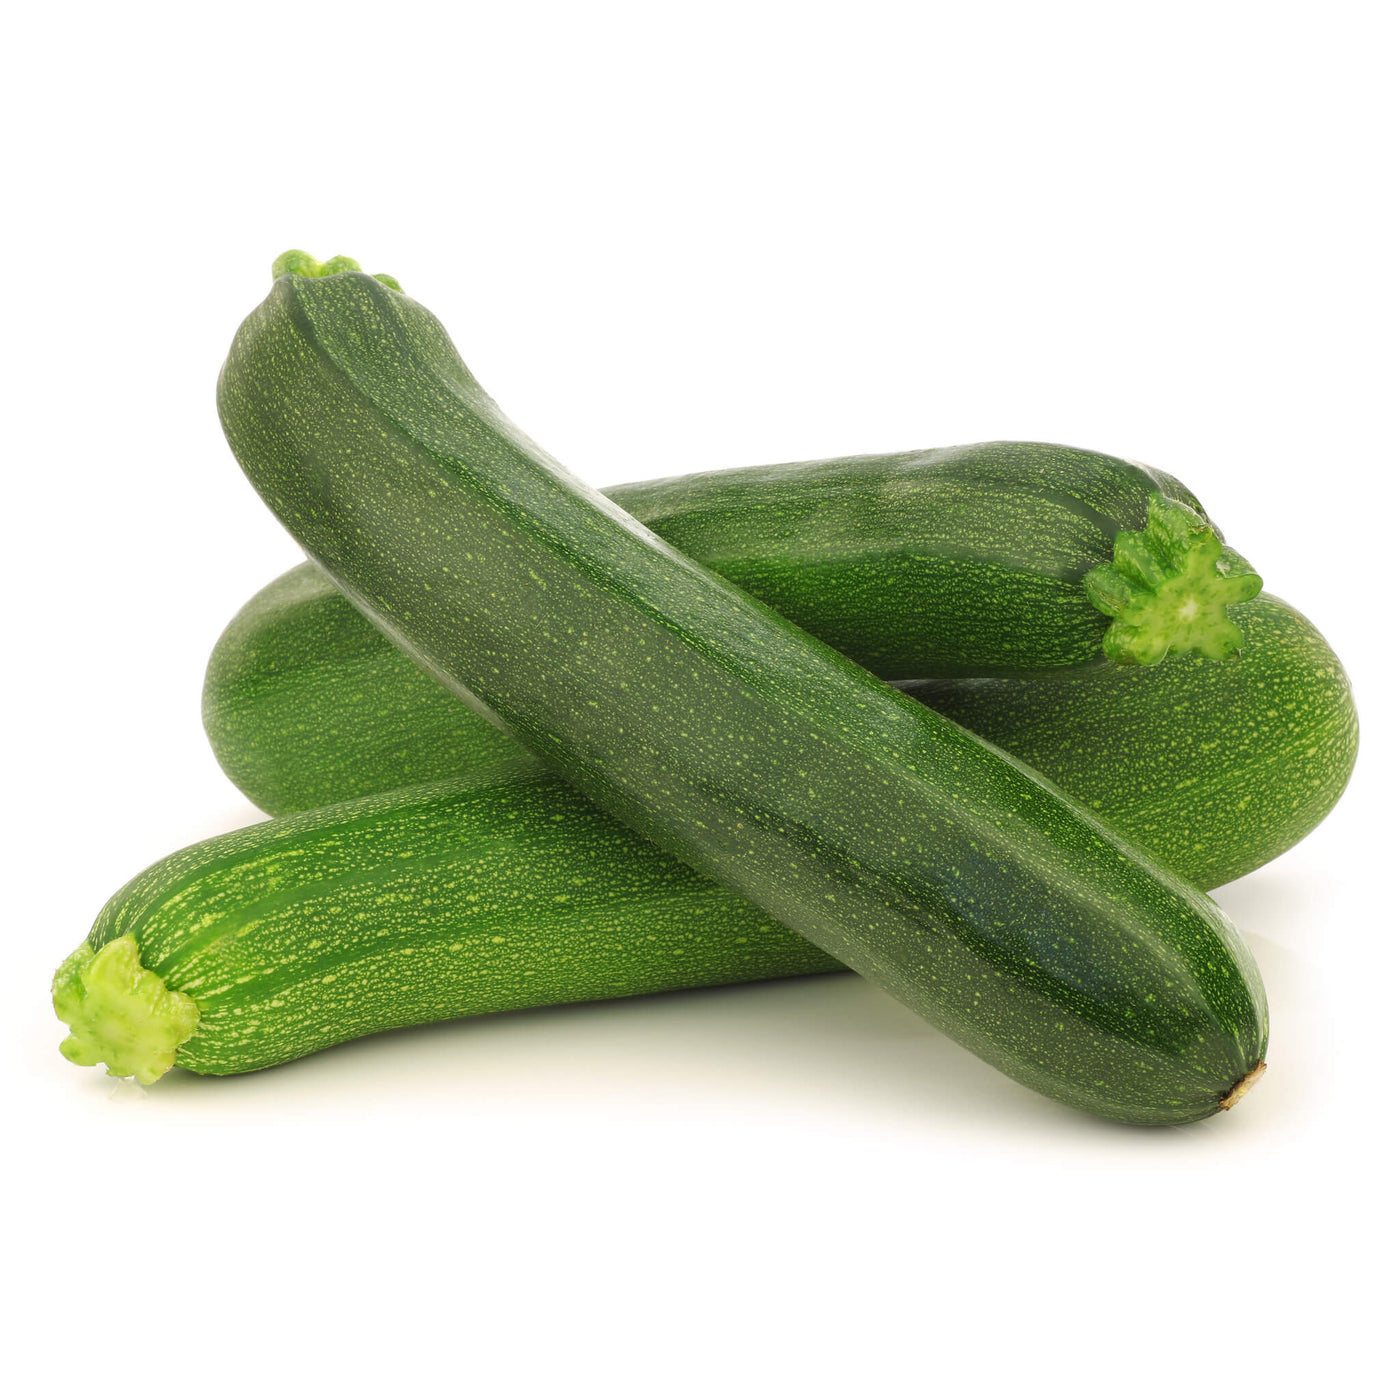 Zucchini Gemüse, Aquaponik, Hochbeet oder Garten